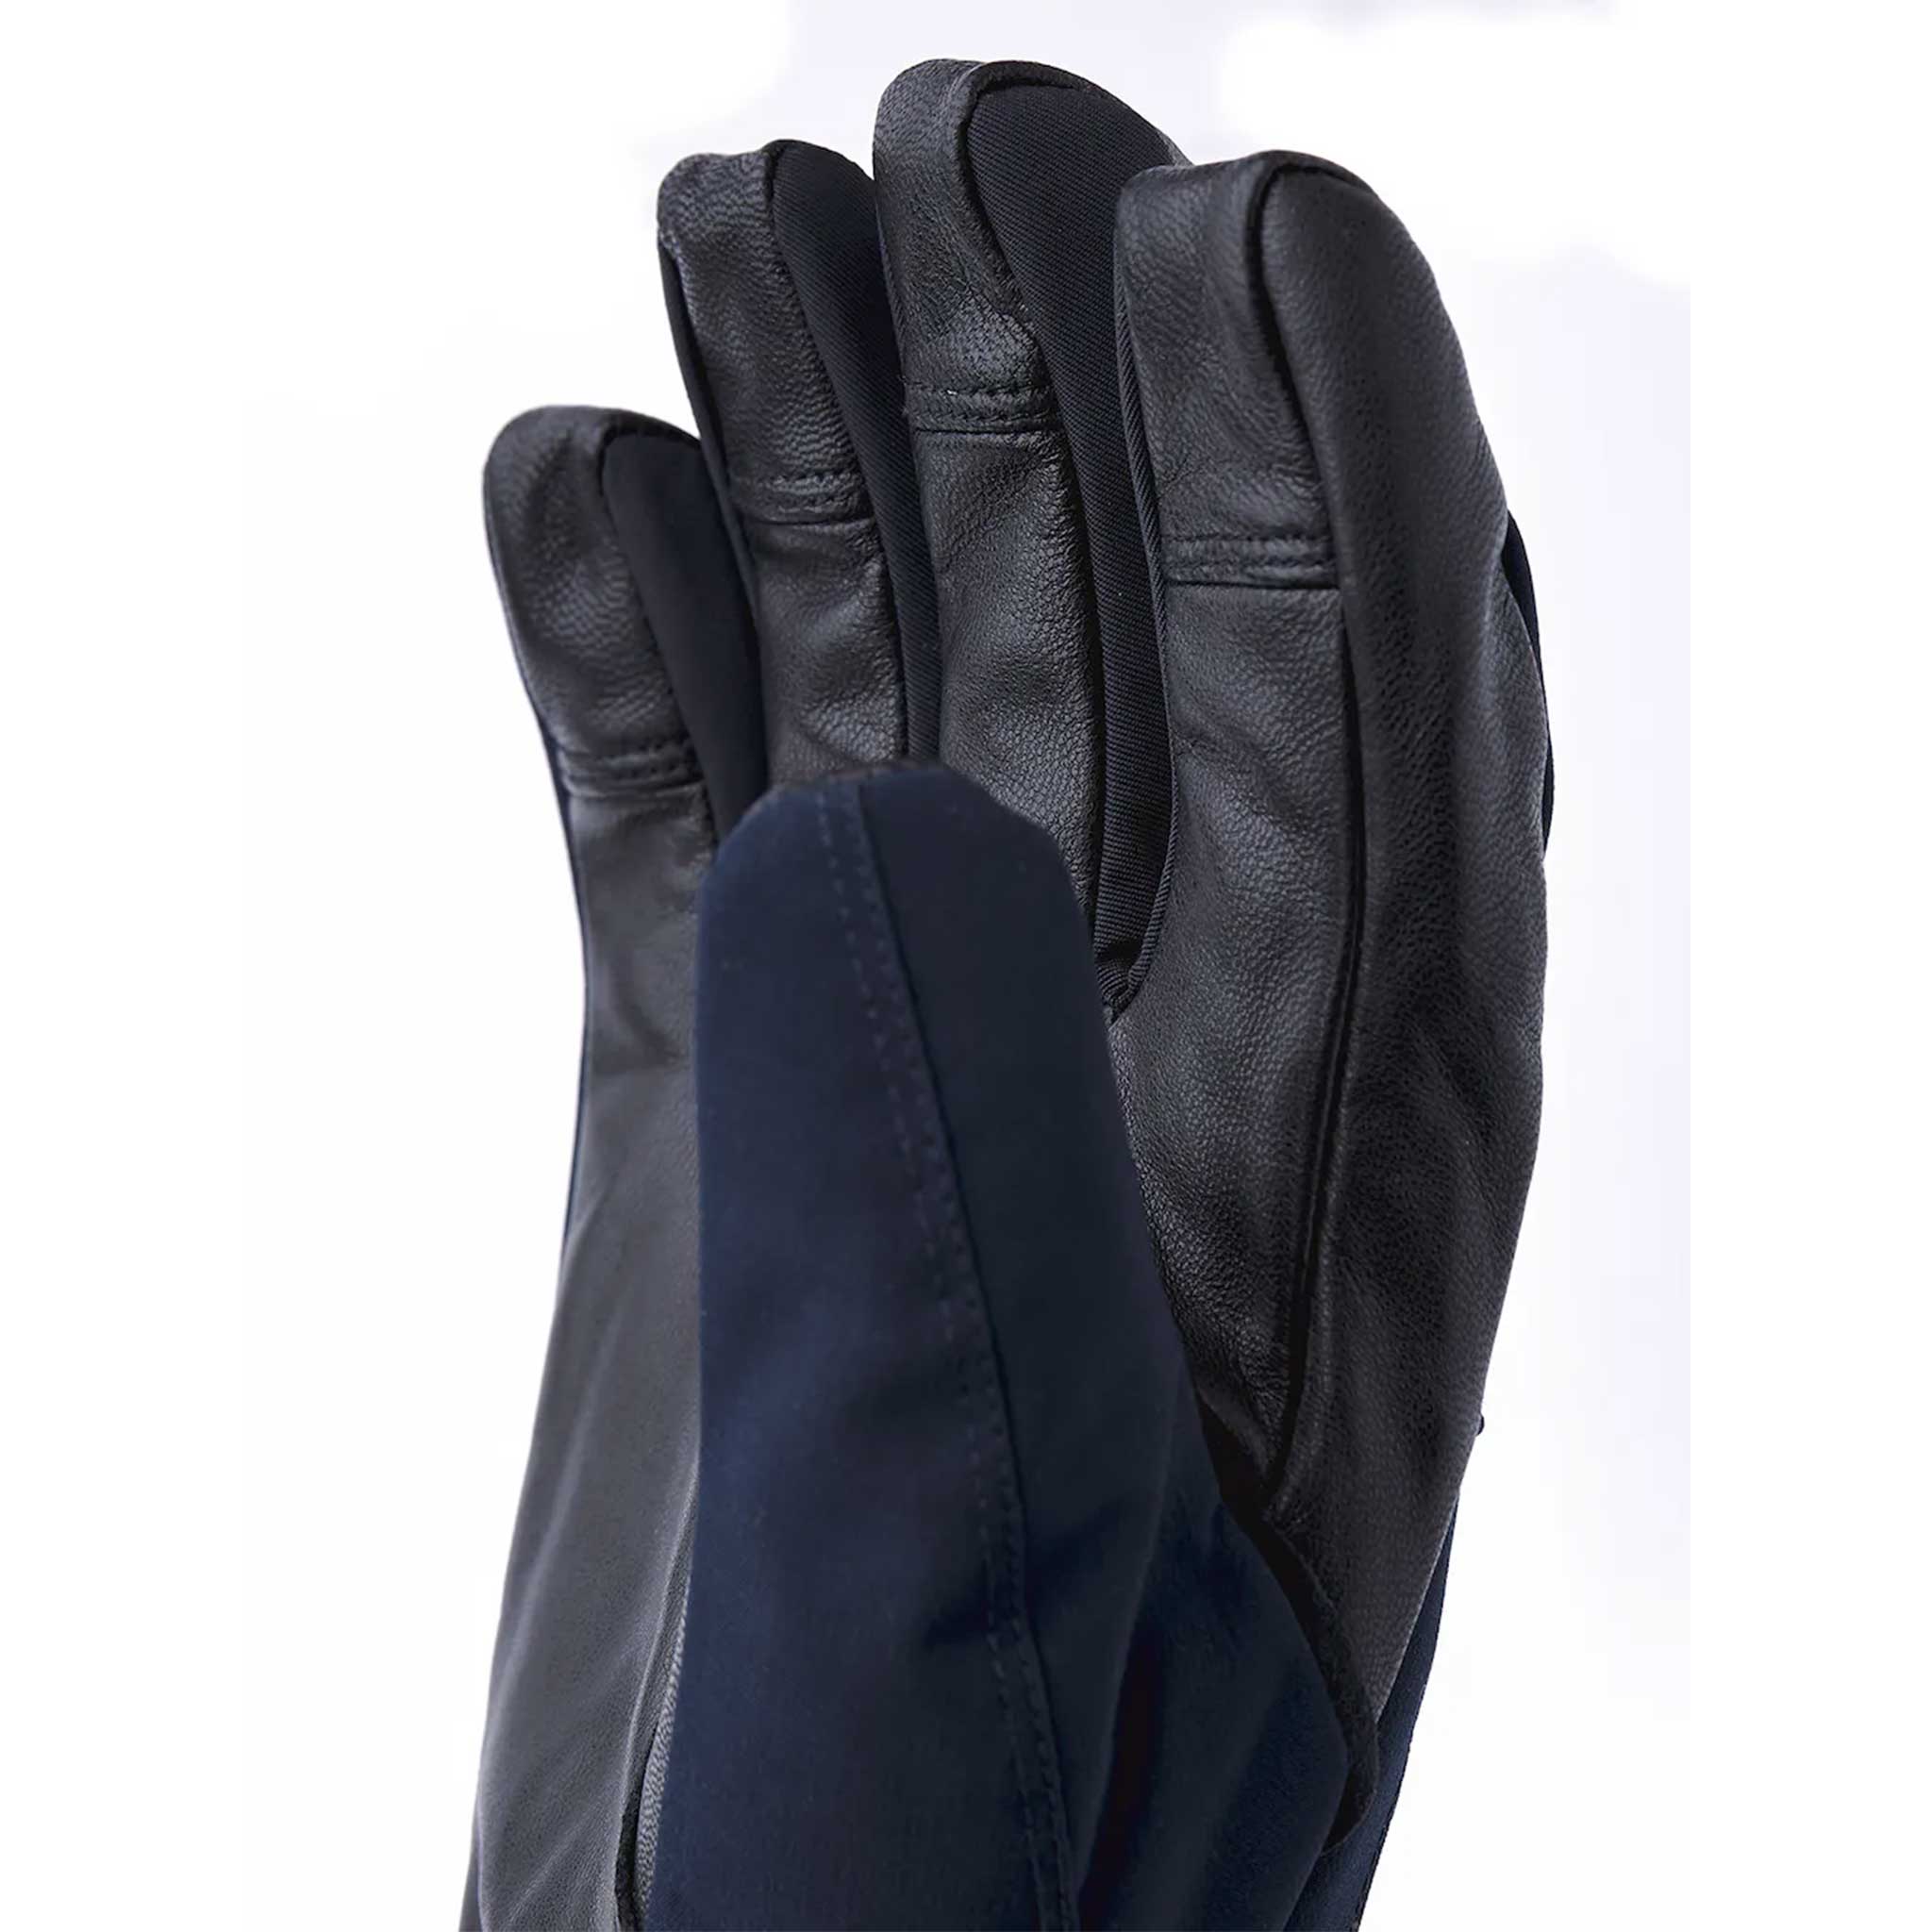 CZone Pointer Gloves in Navy